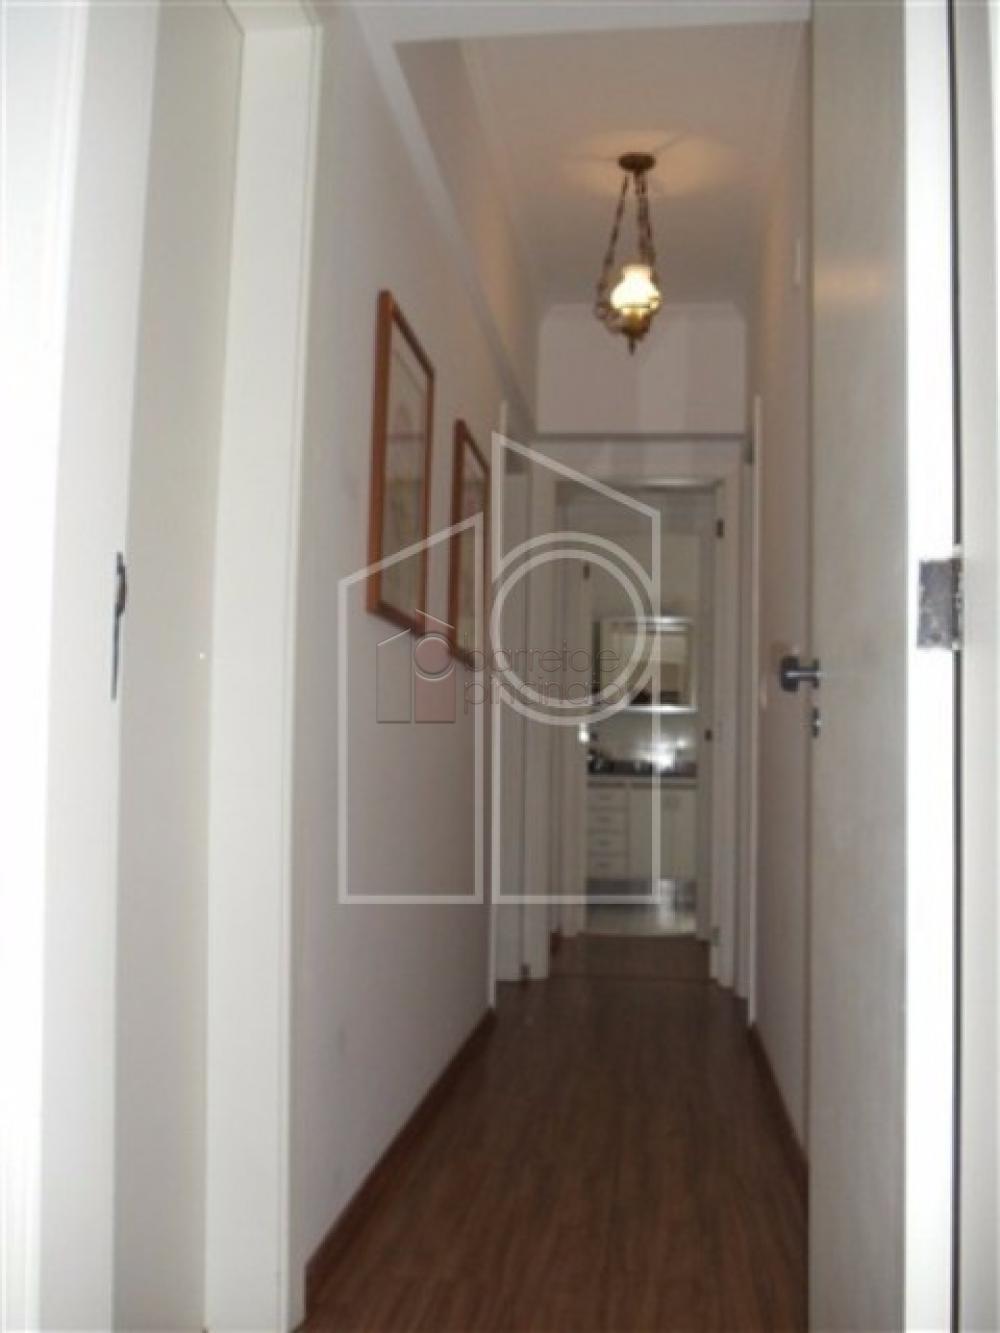 Comprar Apartamento / Padrão em Jundiaí R$ 550.000,00 - Foto 7